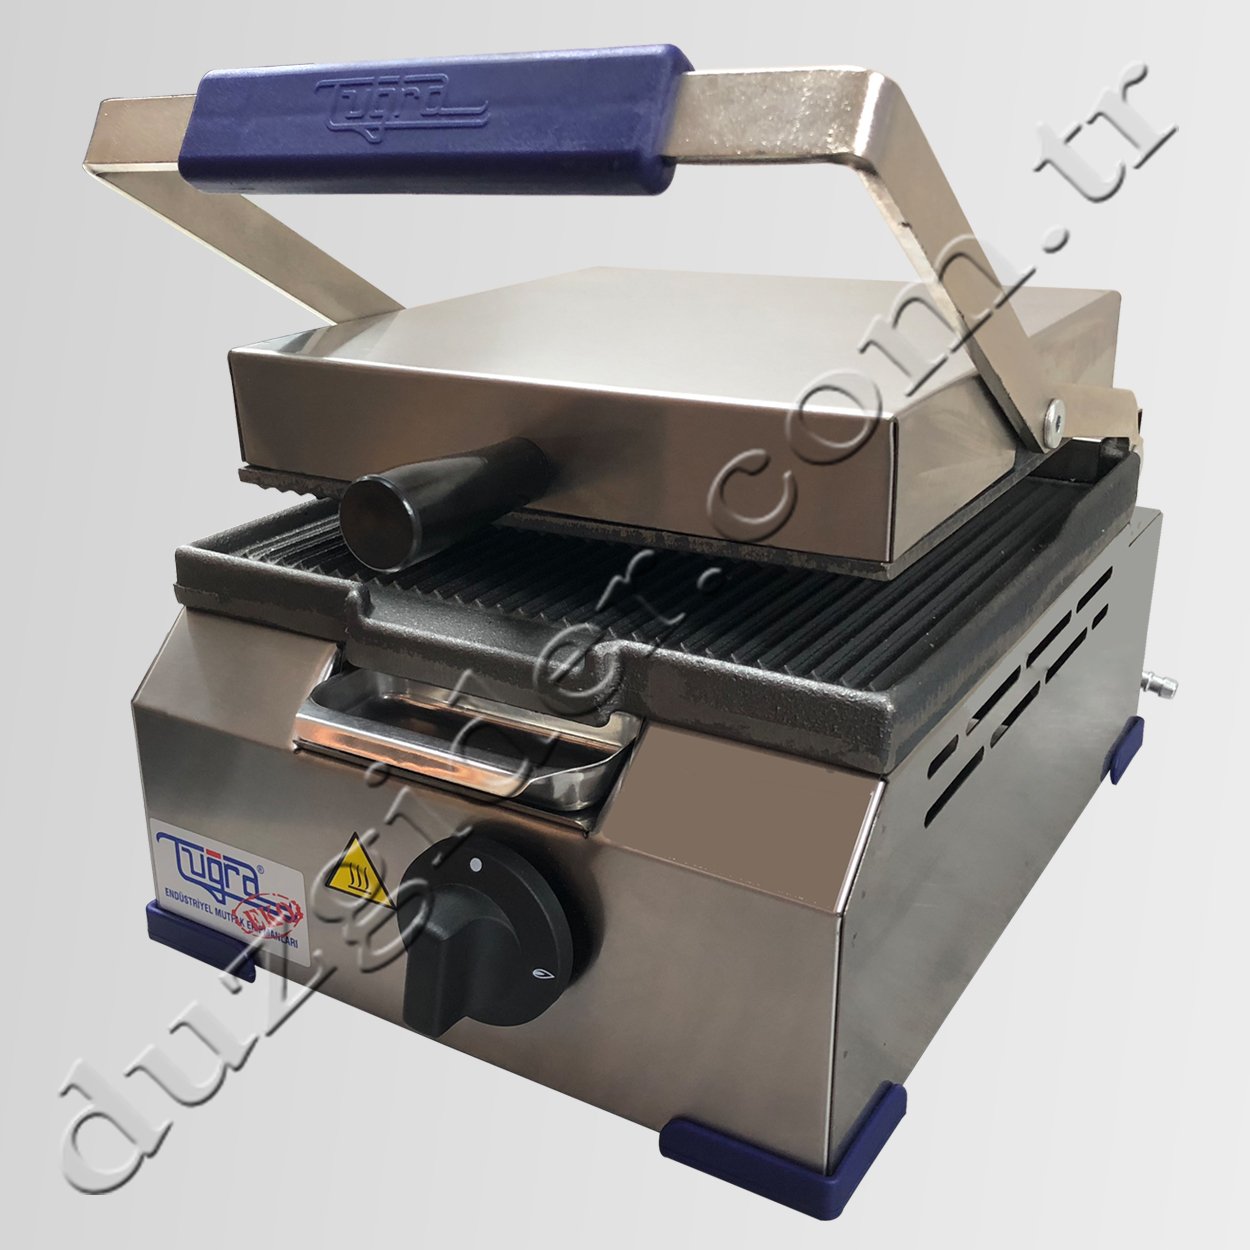 Sönme Emniyetli 8 Dilim Döküm Sanayi Tipi Eko Tost Makinası Tuğra (Temizleme Fırçası Hediyeli)